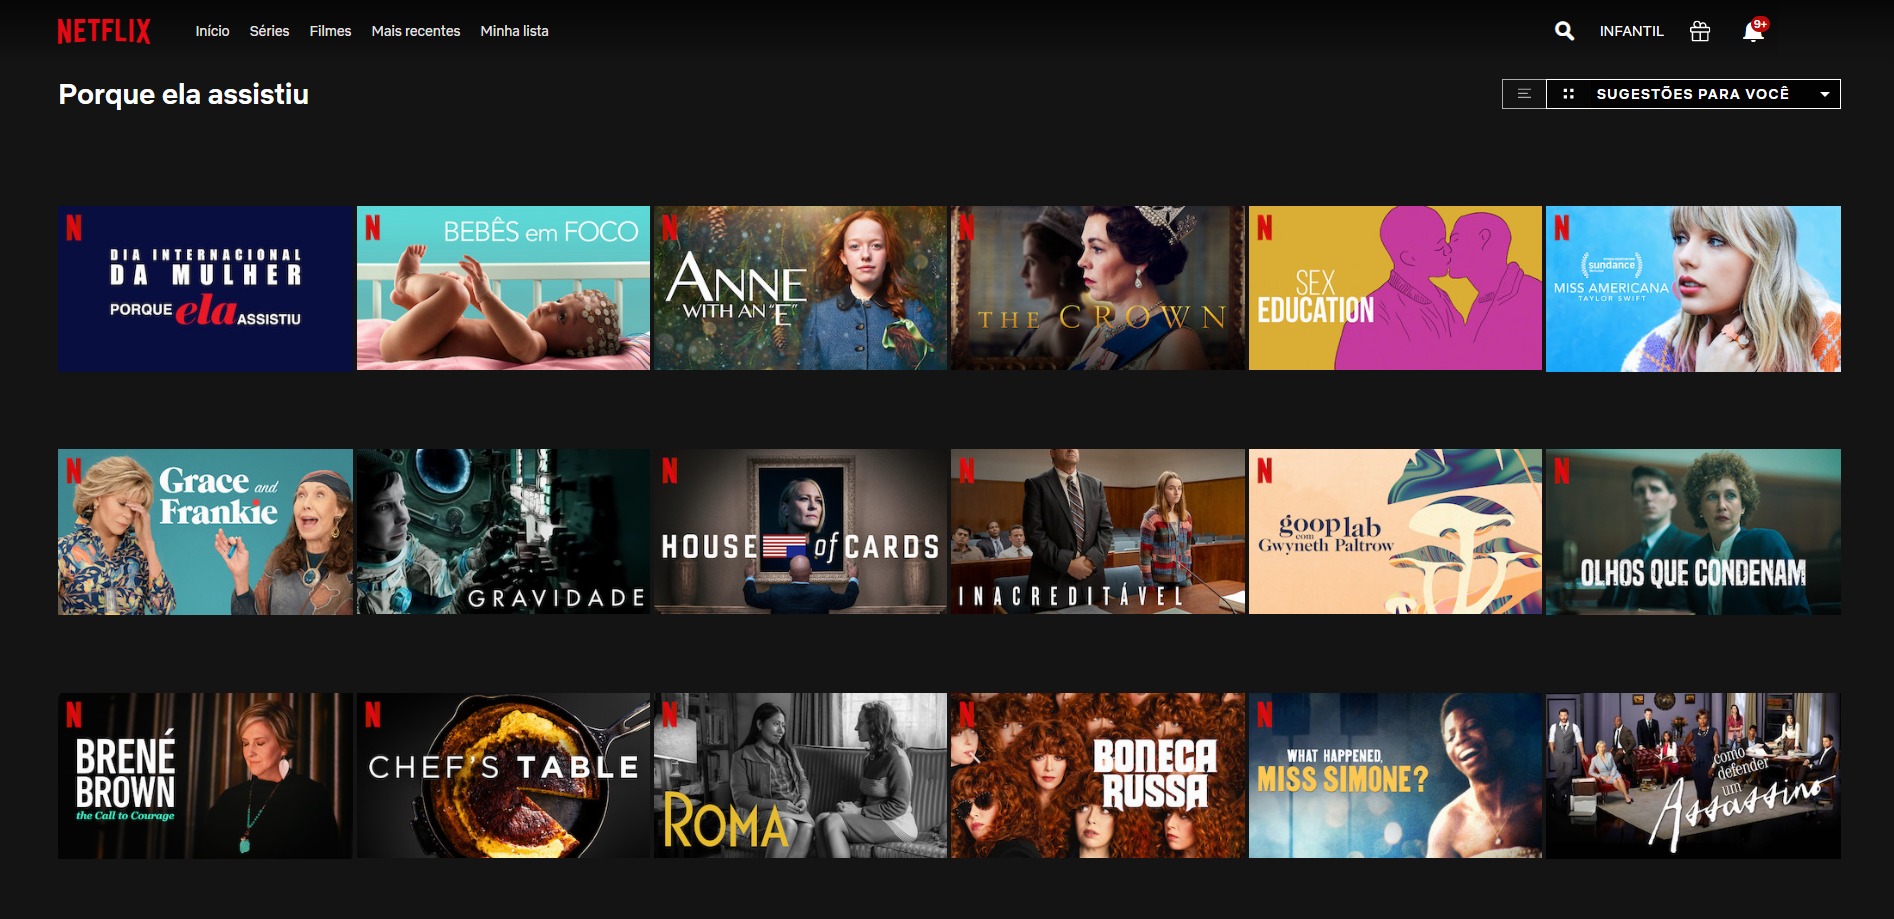 Netflix lança curadoria de filmes e séries em parceria com a ONU Mulheres